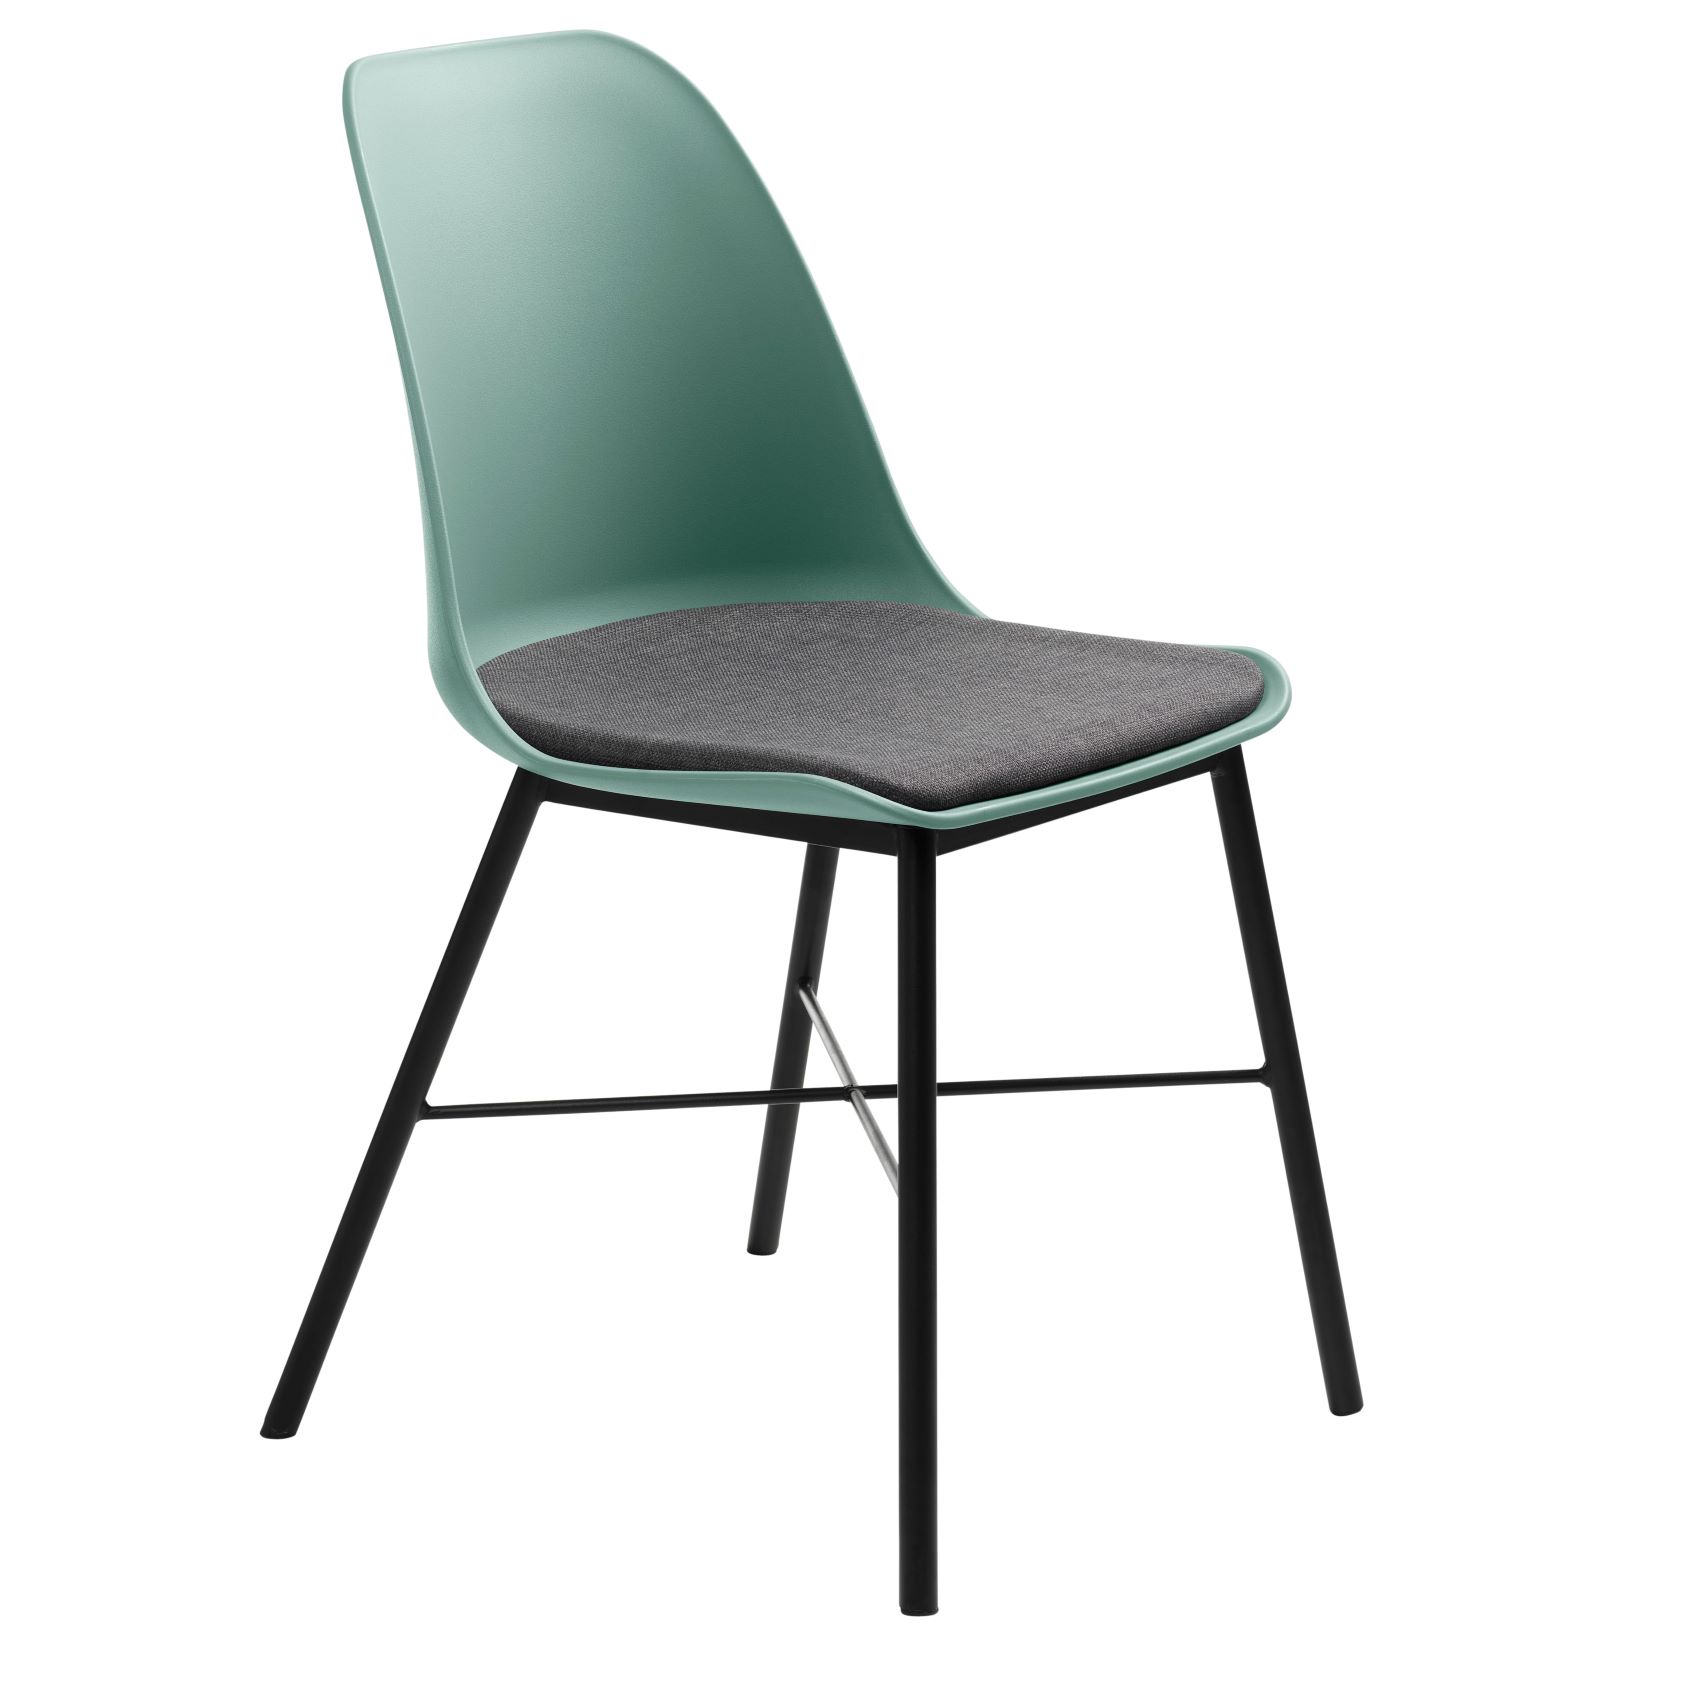 Kunststoffstuhl Gjeld  - Metallbeine - skandinavisches Design - gepolsterte Sitzfläche - staubgrün